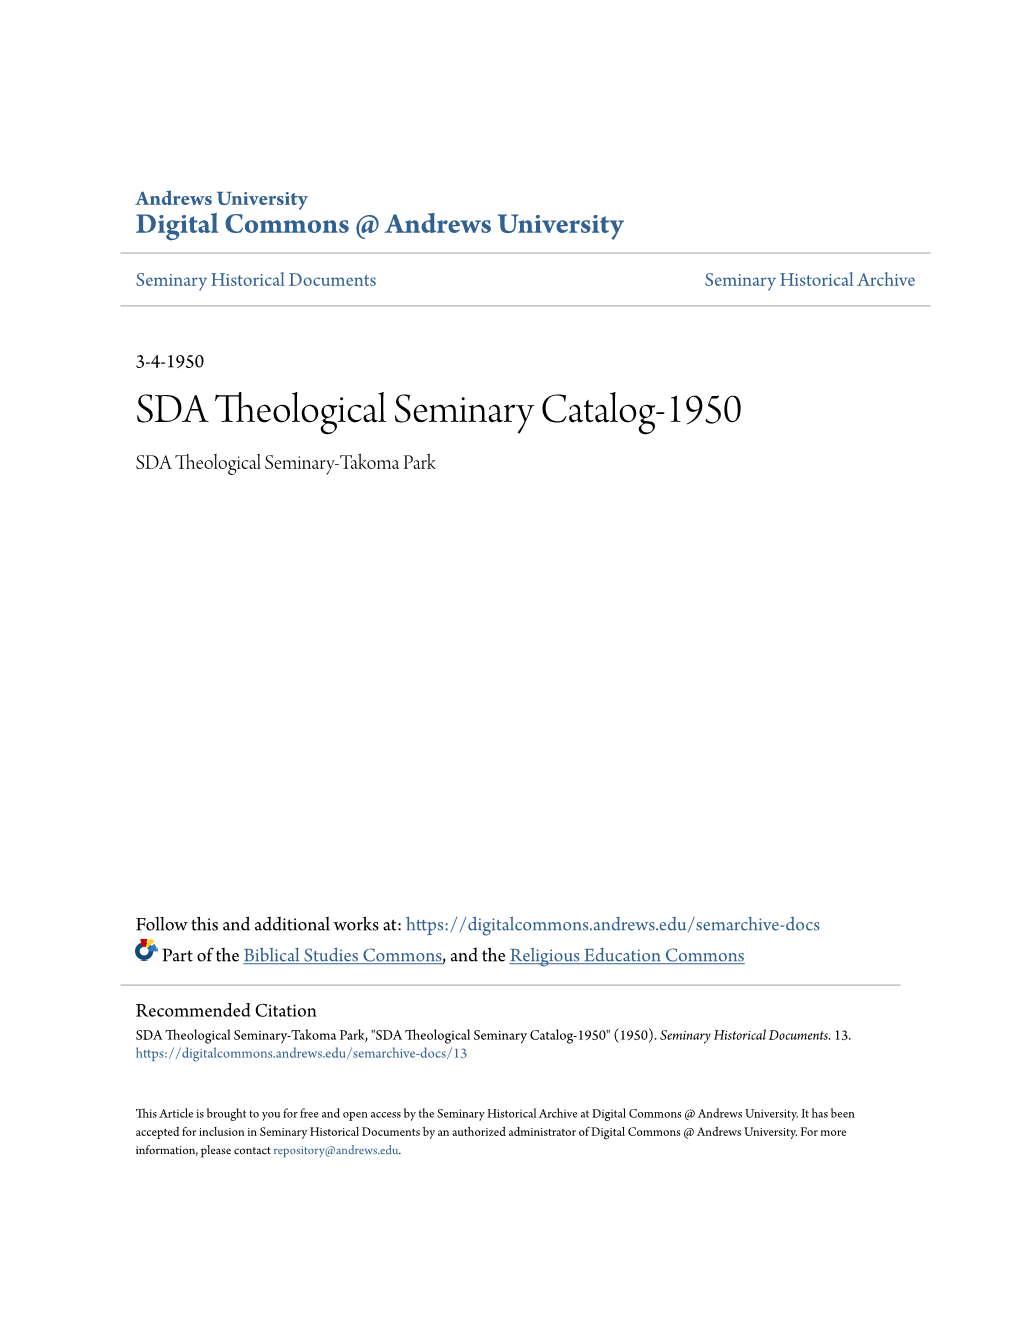 SDA Theological Seminary Catalog-1950 SDA Theological Seminary-Takoma Park